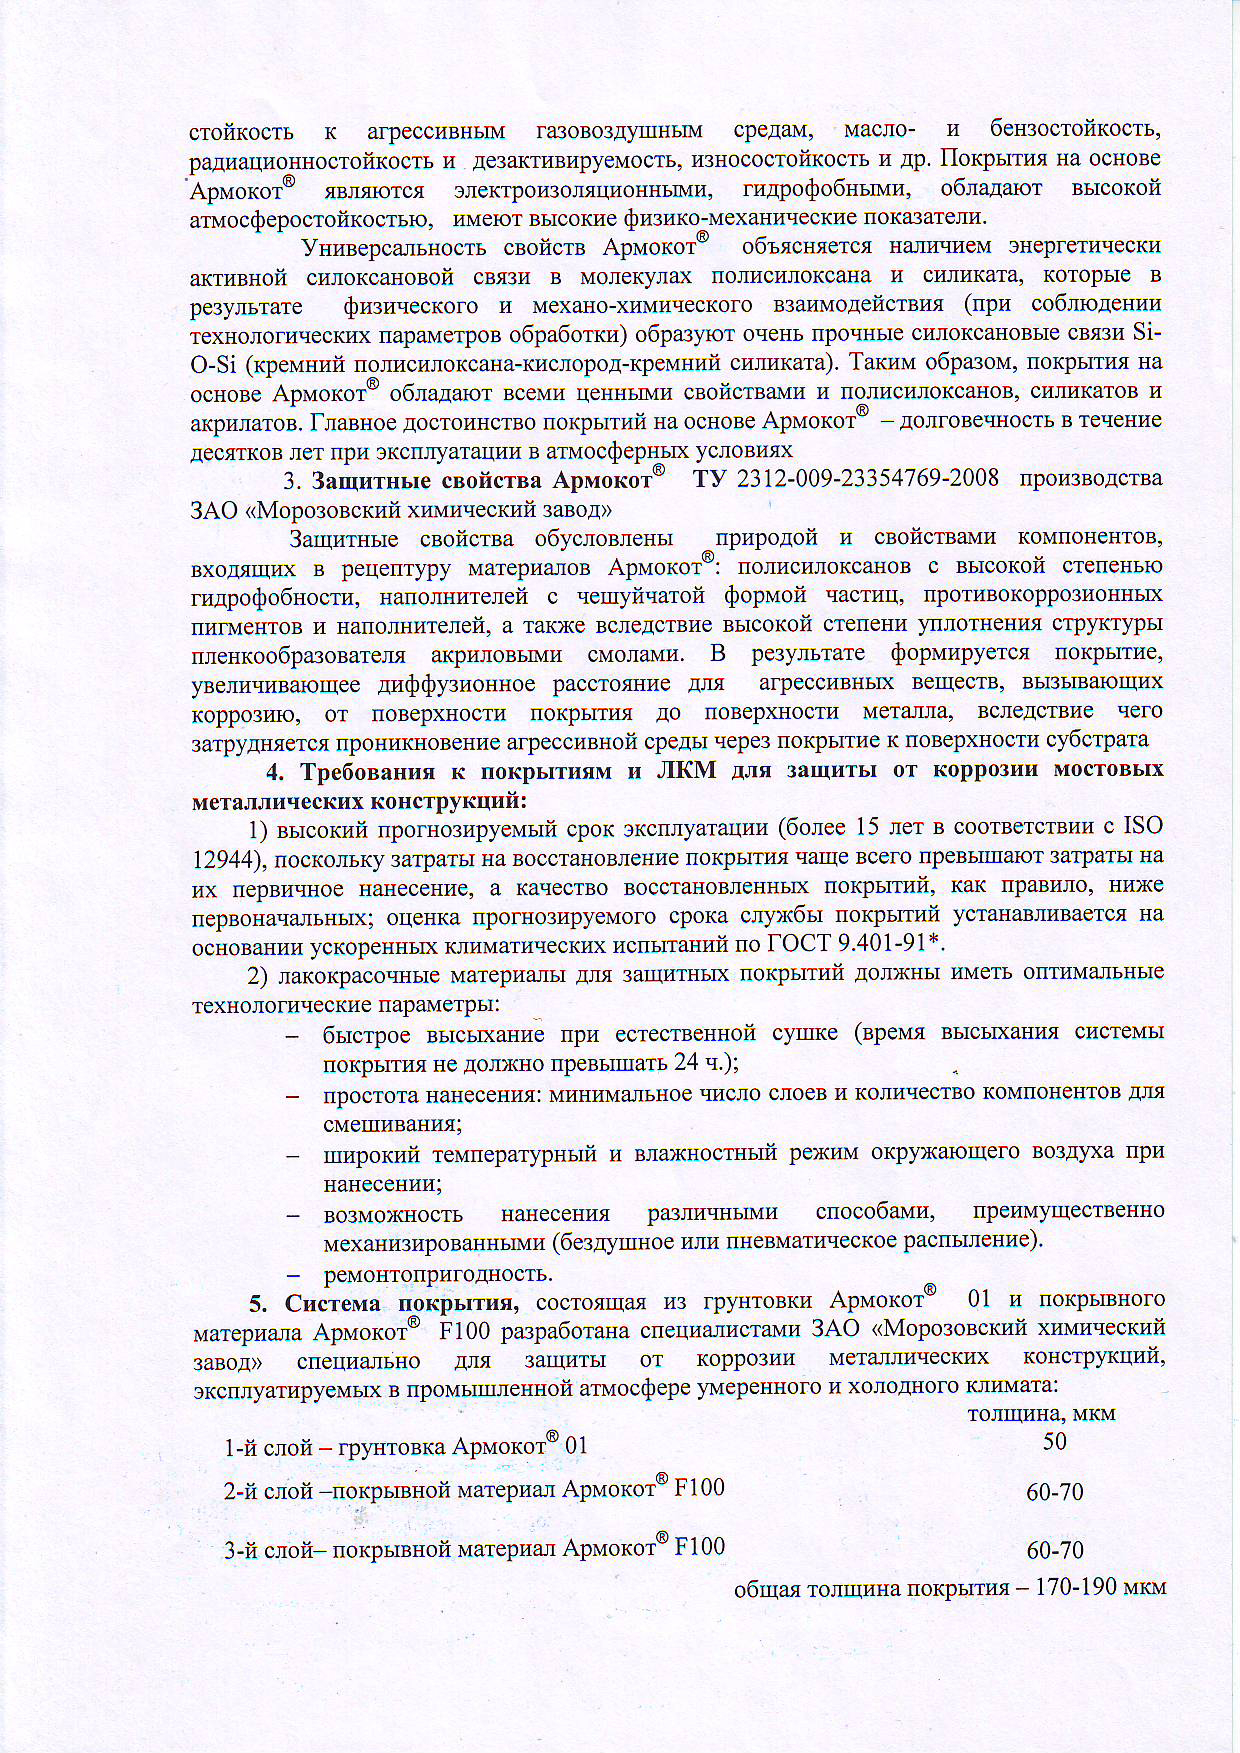 ЦНИИС-МОСТЫ заключение на систему Армокот 01-F100 25 лет 2 лист